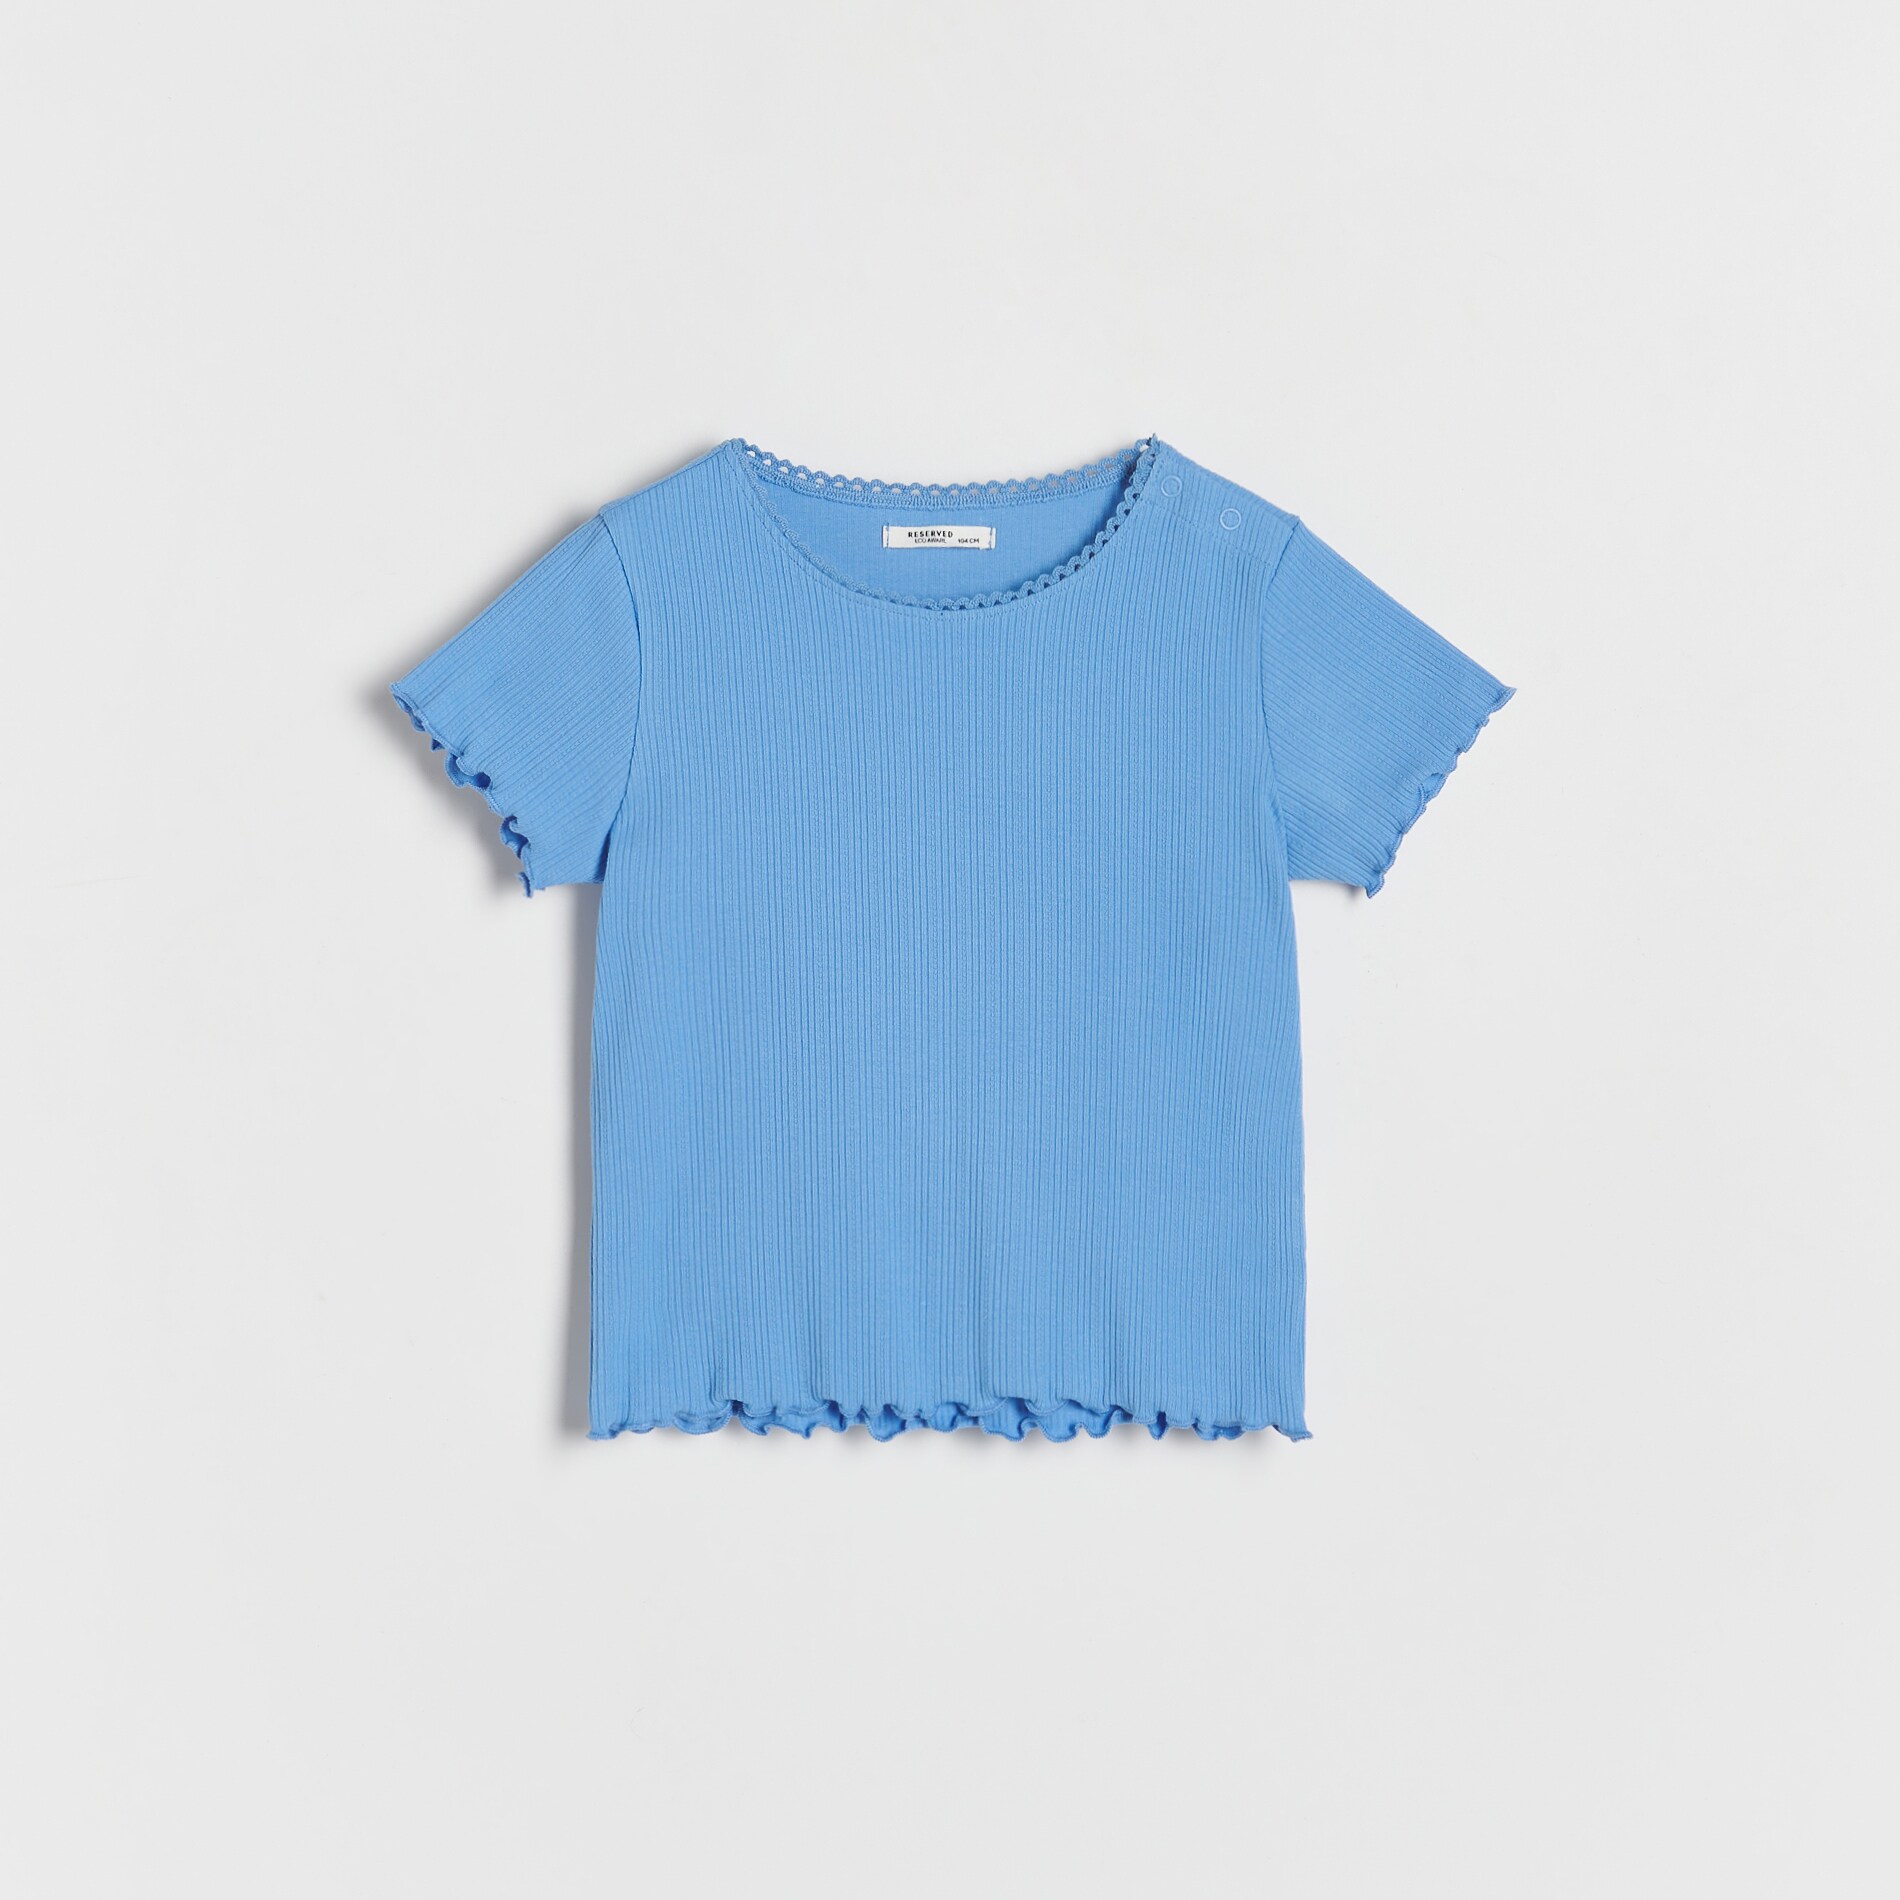 Reserved – Tricou din tricot striat, cu conținut ridicat de bumbac – Albastru Albastru imagine noua gjx.ro